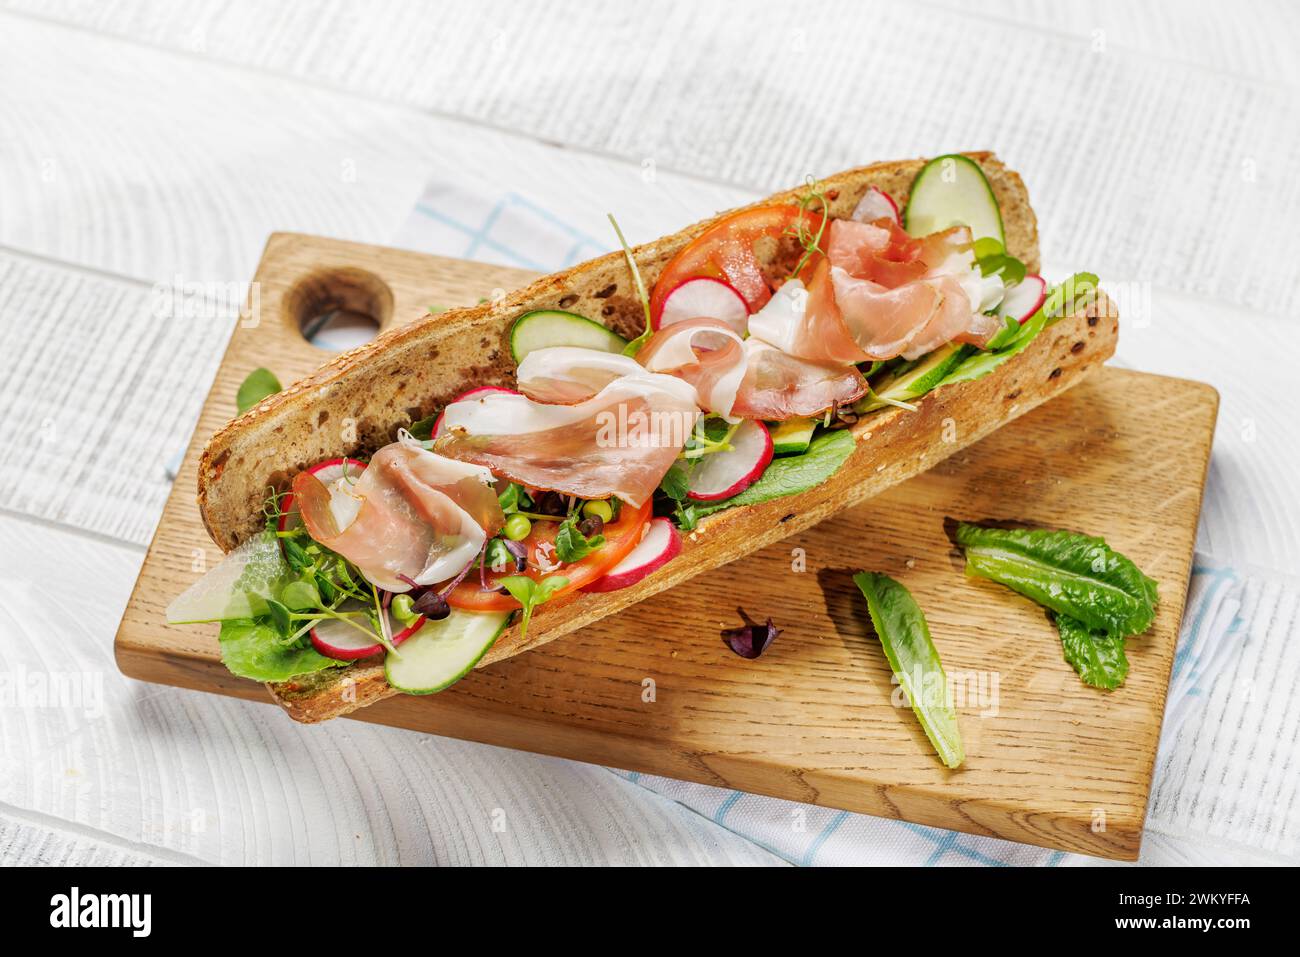 Köstliches Sandwich, gefüllt mit frischem Baguette, voller Geschmack und gesunden Zutaten Stockfoto